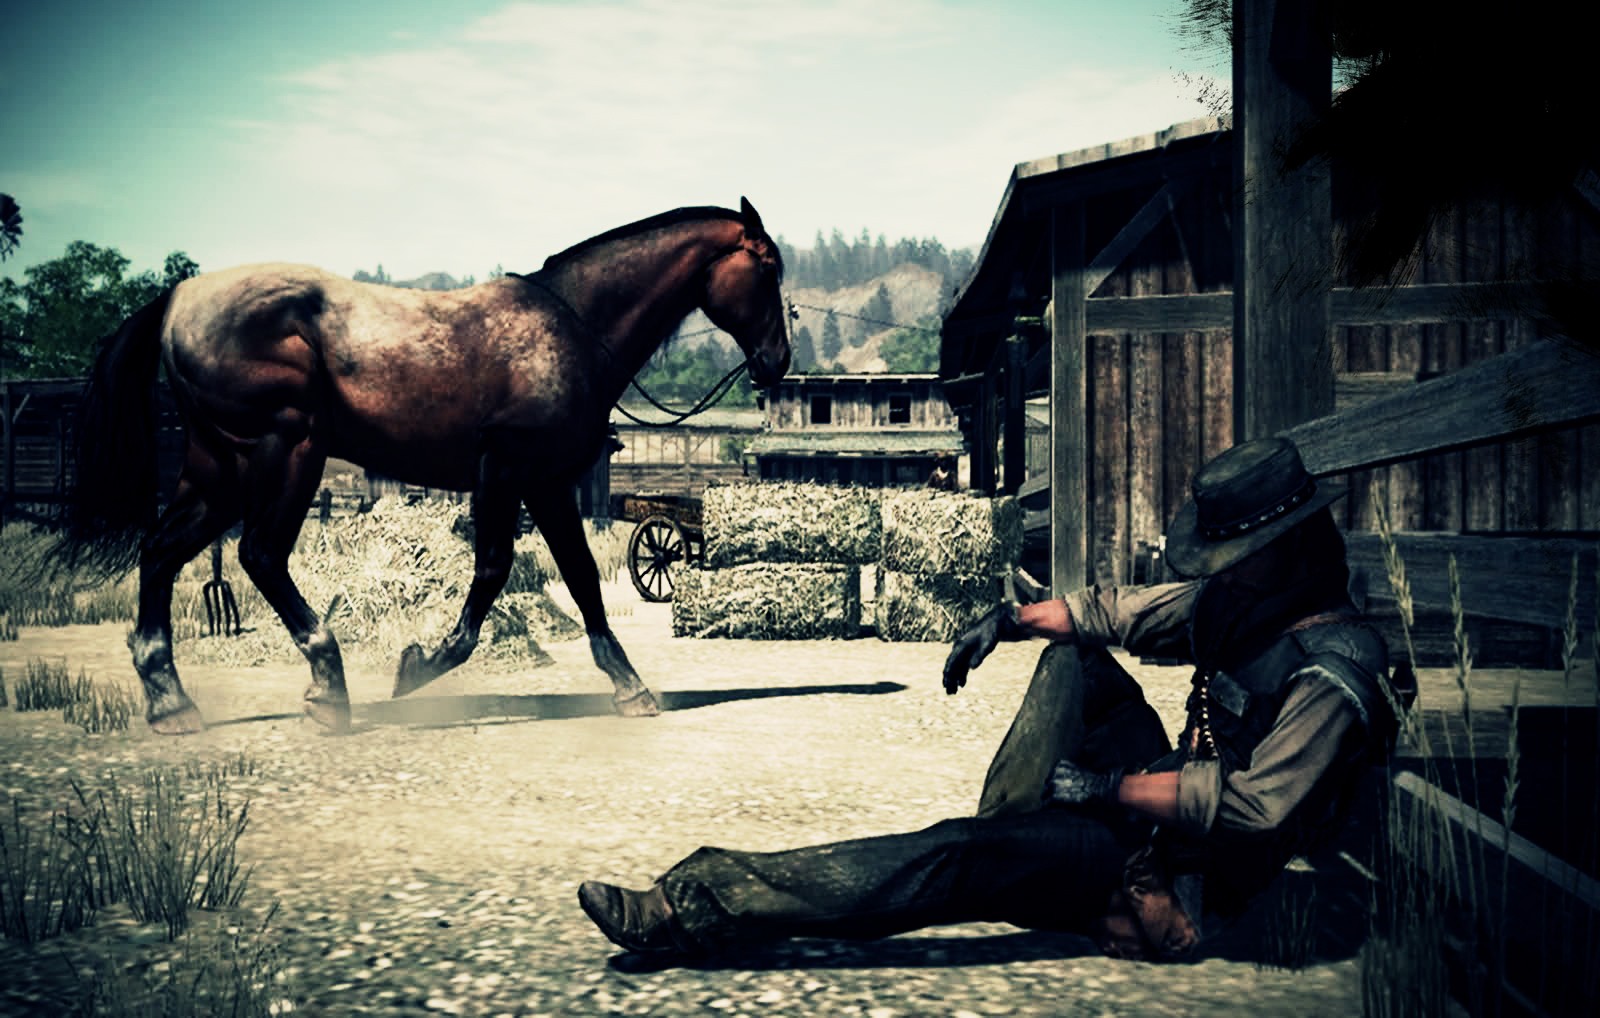 General 1600x1018 Red Dead Redemption Rockstar Games John Marston western horse animals mammals men